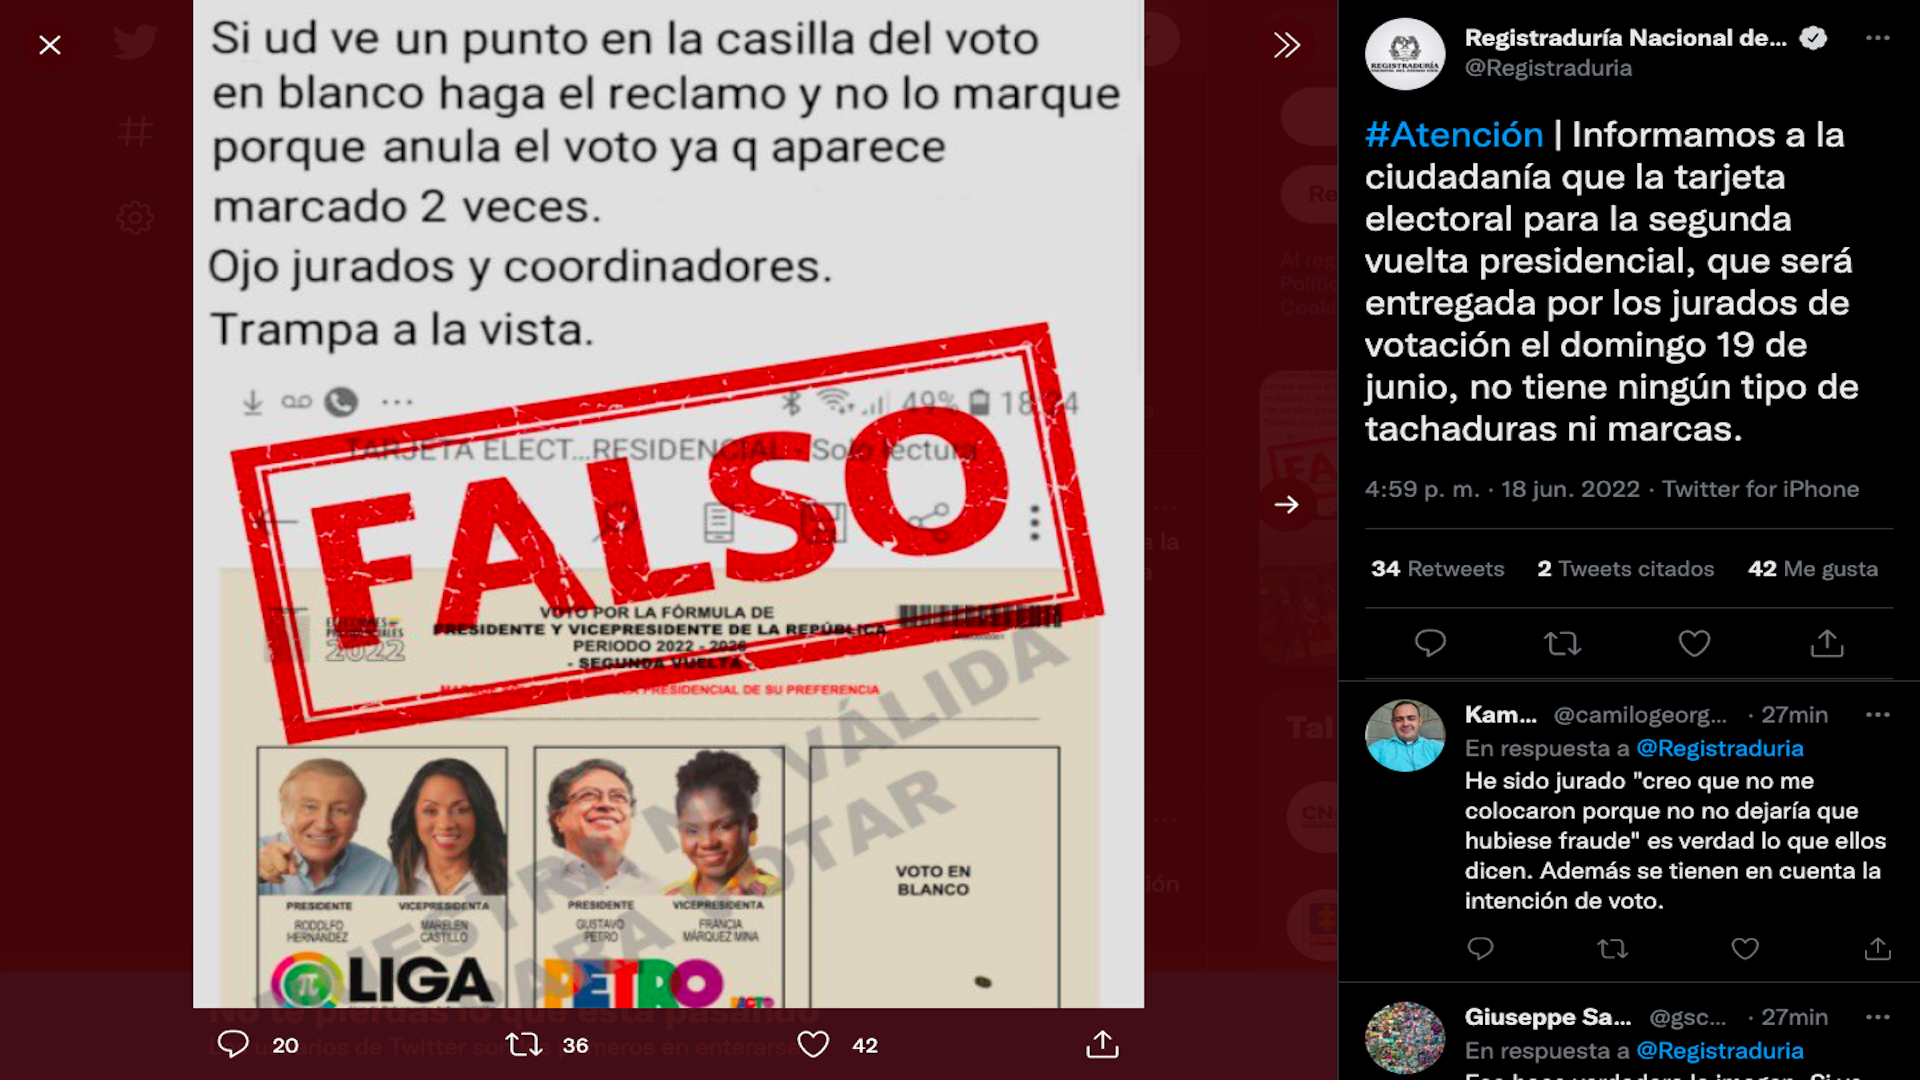 Registraduría Nacional aclara que los tarjetones electorales del 19 de junio de 2022 en Colombia no tendrán marcas previas que anulen votos / (Twitter: @Registraduria)